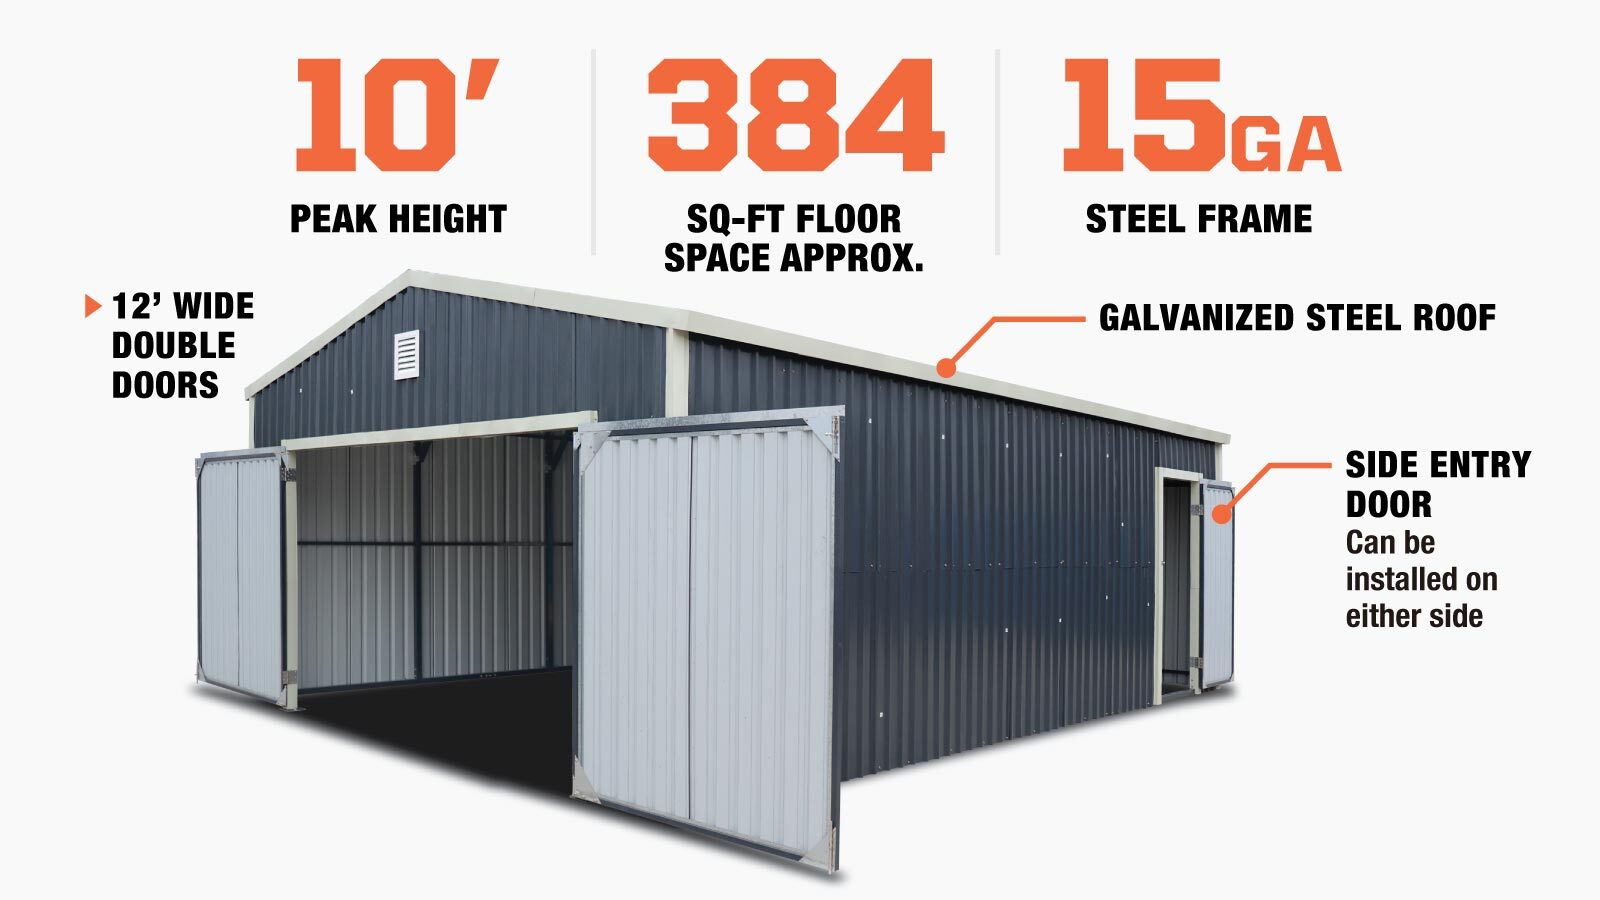 TMG Industrial 16’ x 24’ Metal Garage Shed with Double Front Doors, 10’ Peak Height, Side Entry Door, 384 Sq-Ft Floor Space, TMG-MS1624-description-image